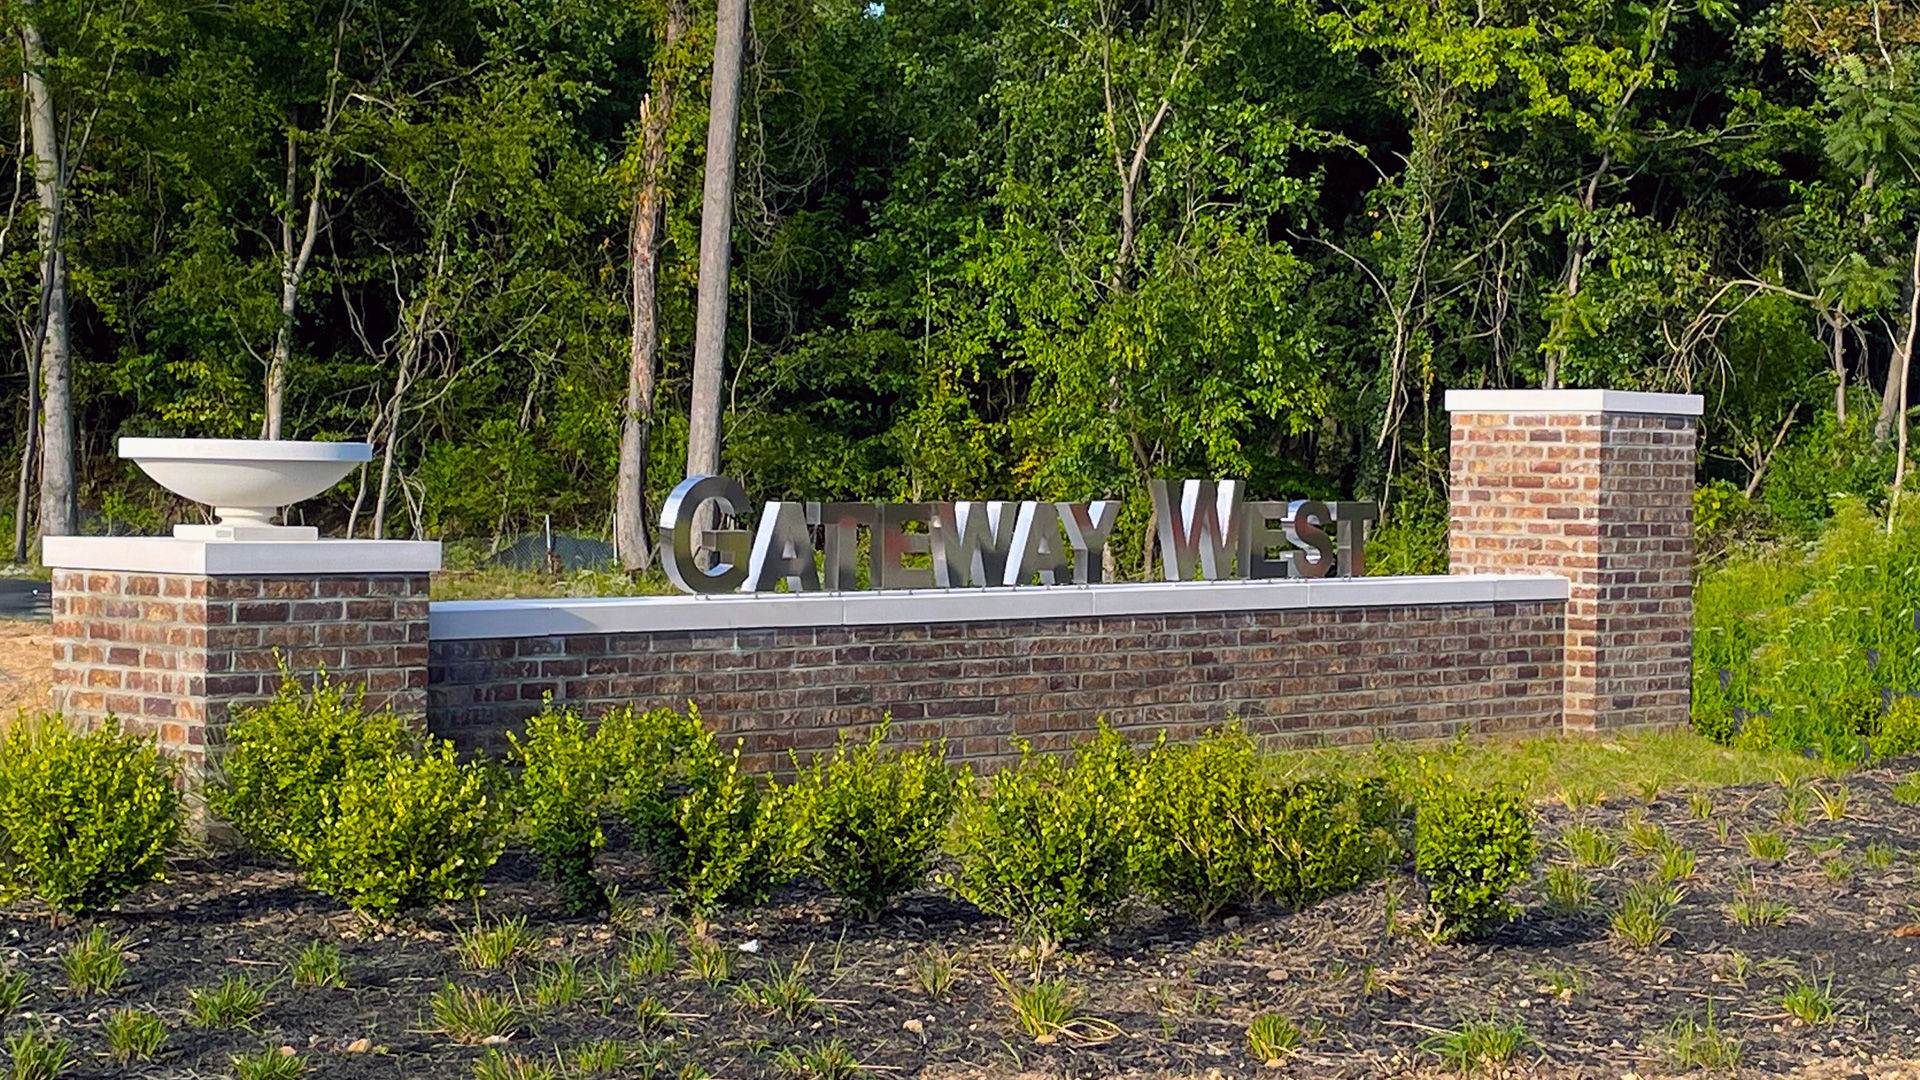 Gateway West in Hyattsville, MD